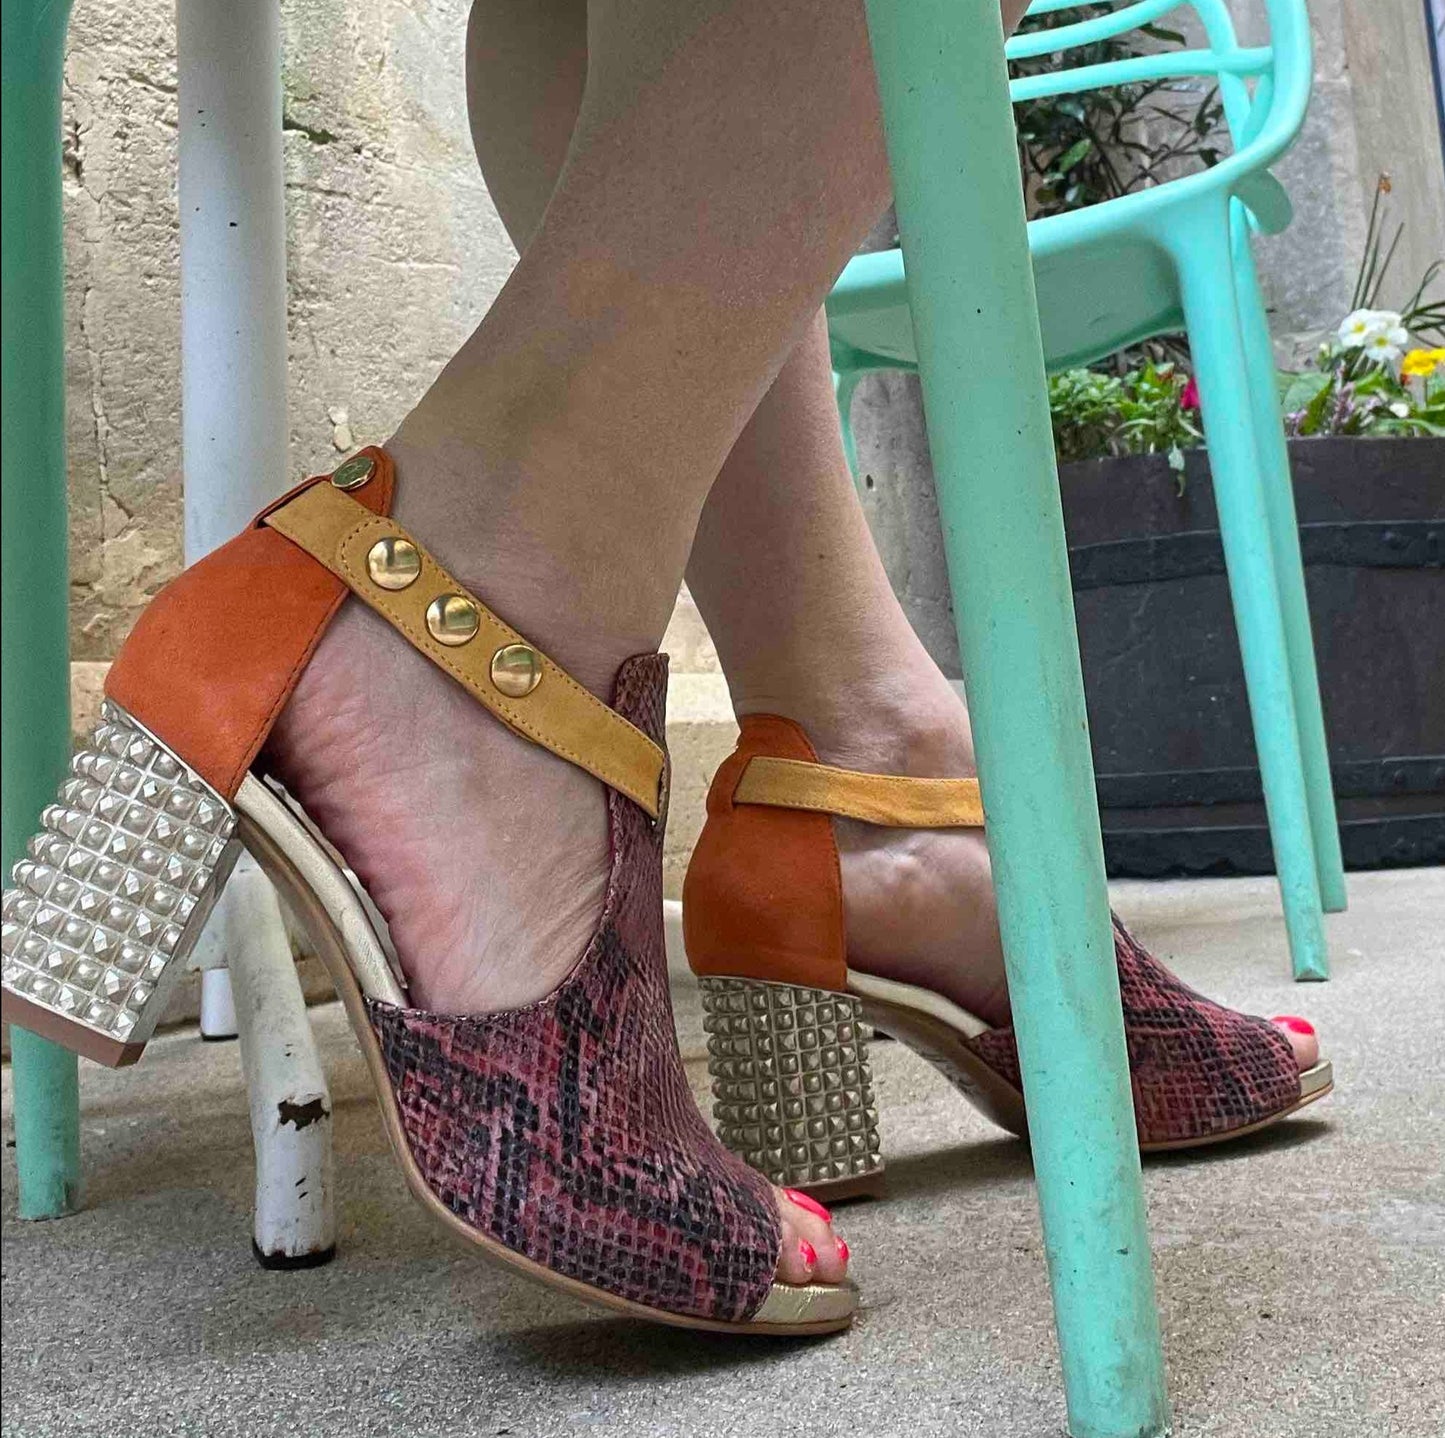 Rayon - Coral orange sandal